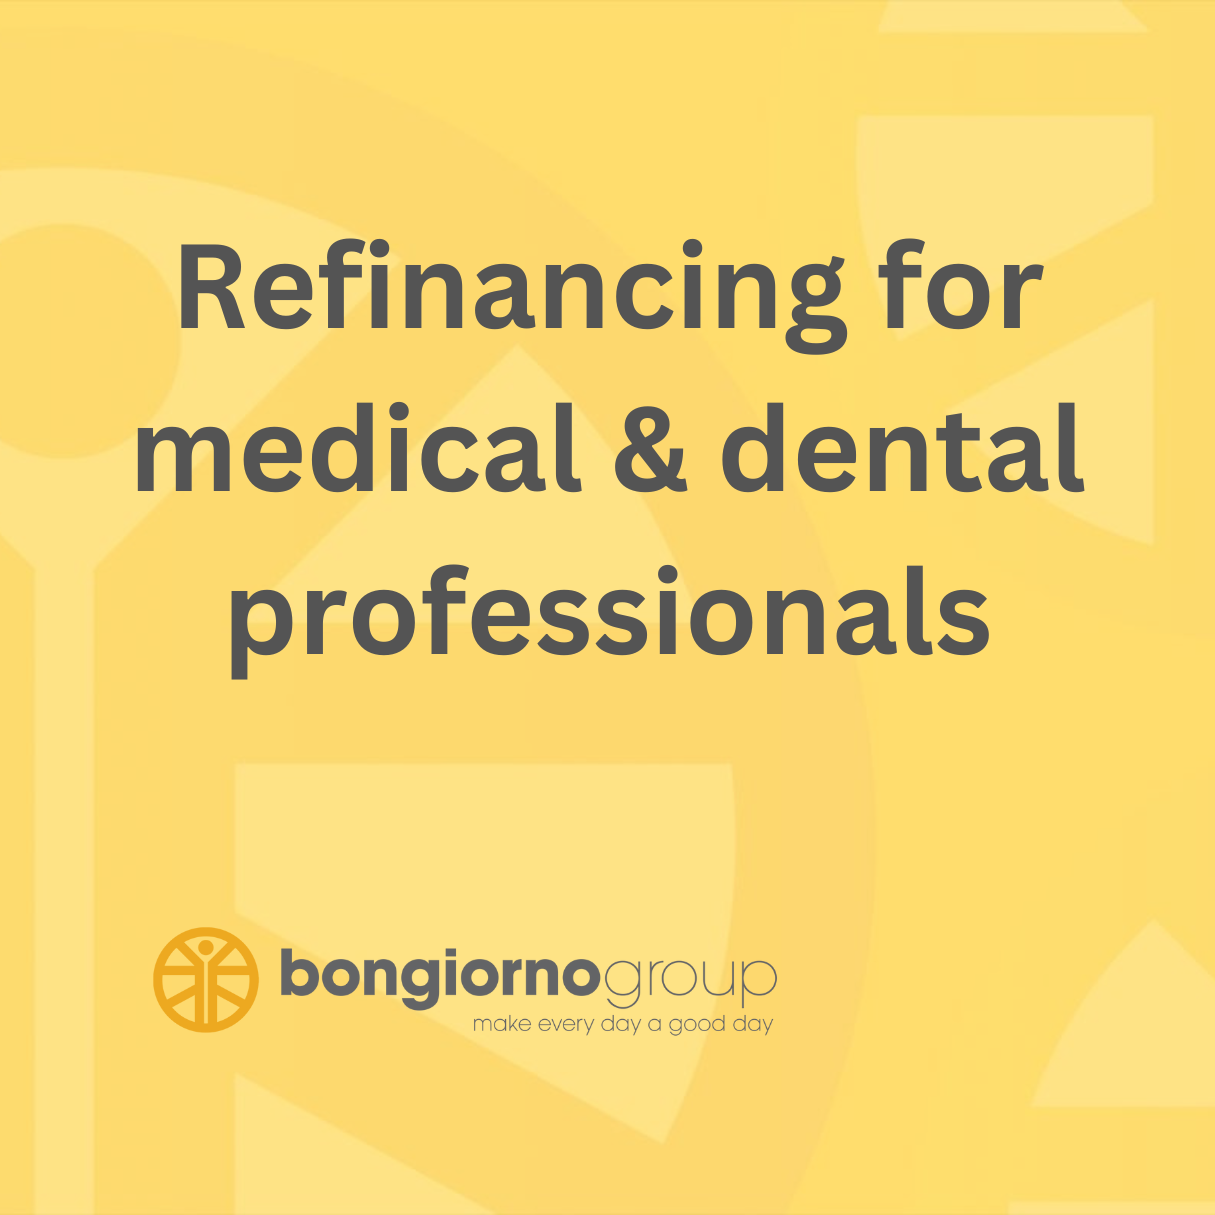 Refinancing for medical & dental professionals